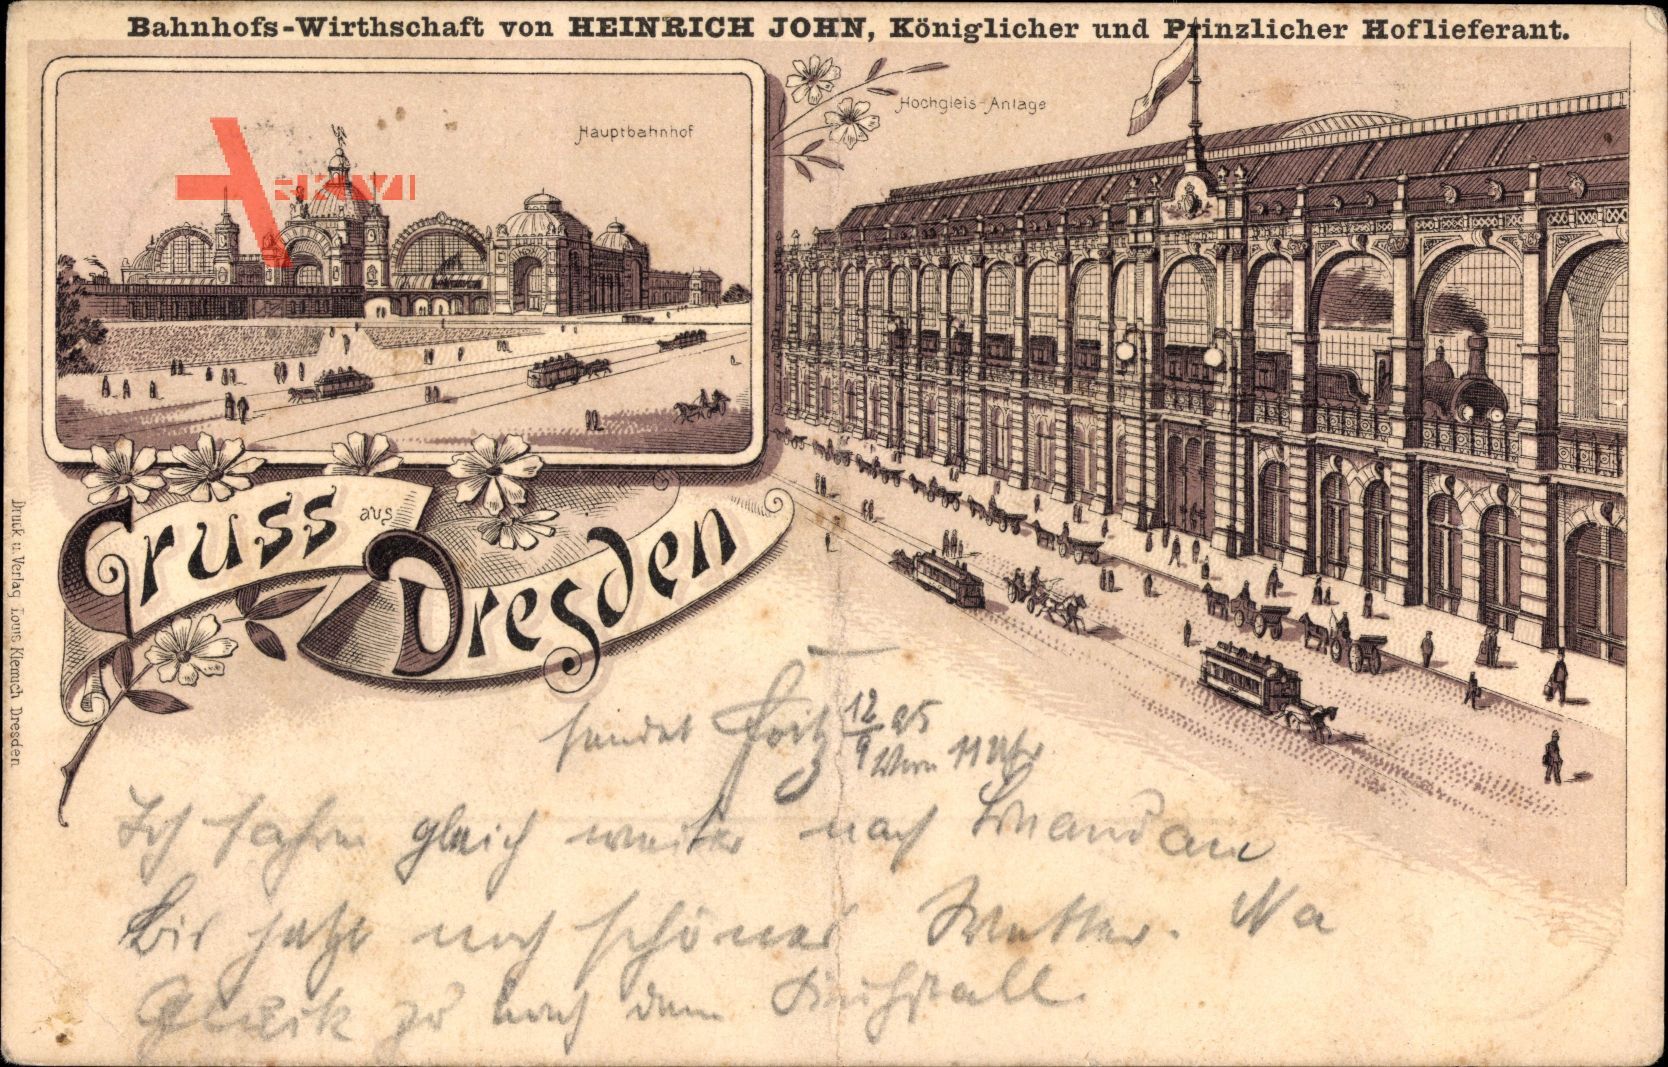 Vorläufer Dresden, Bahnhofswirtschaft, Heinrich John, Hochgleis, 1895